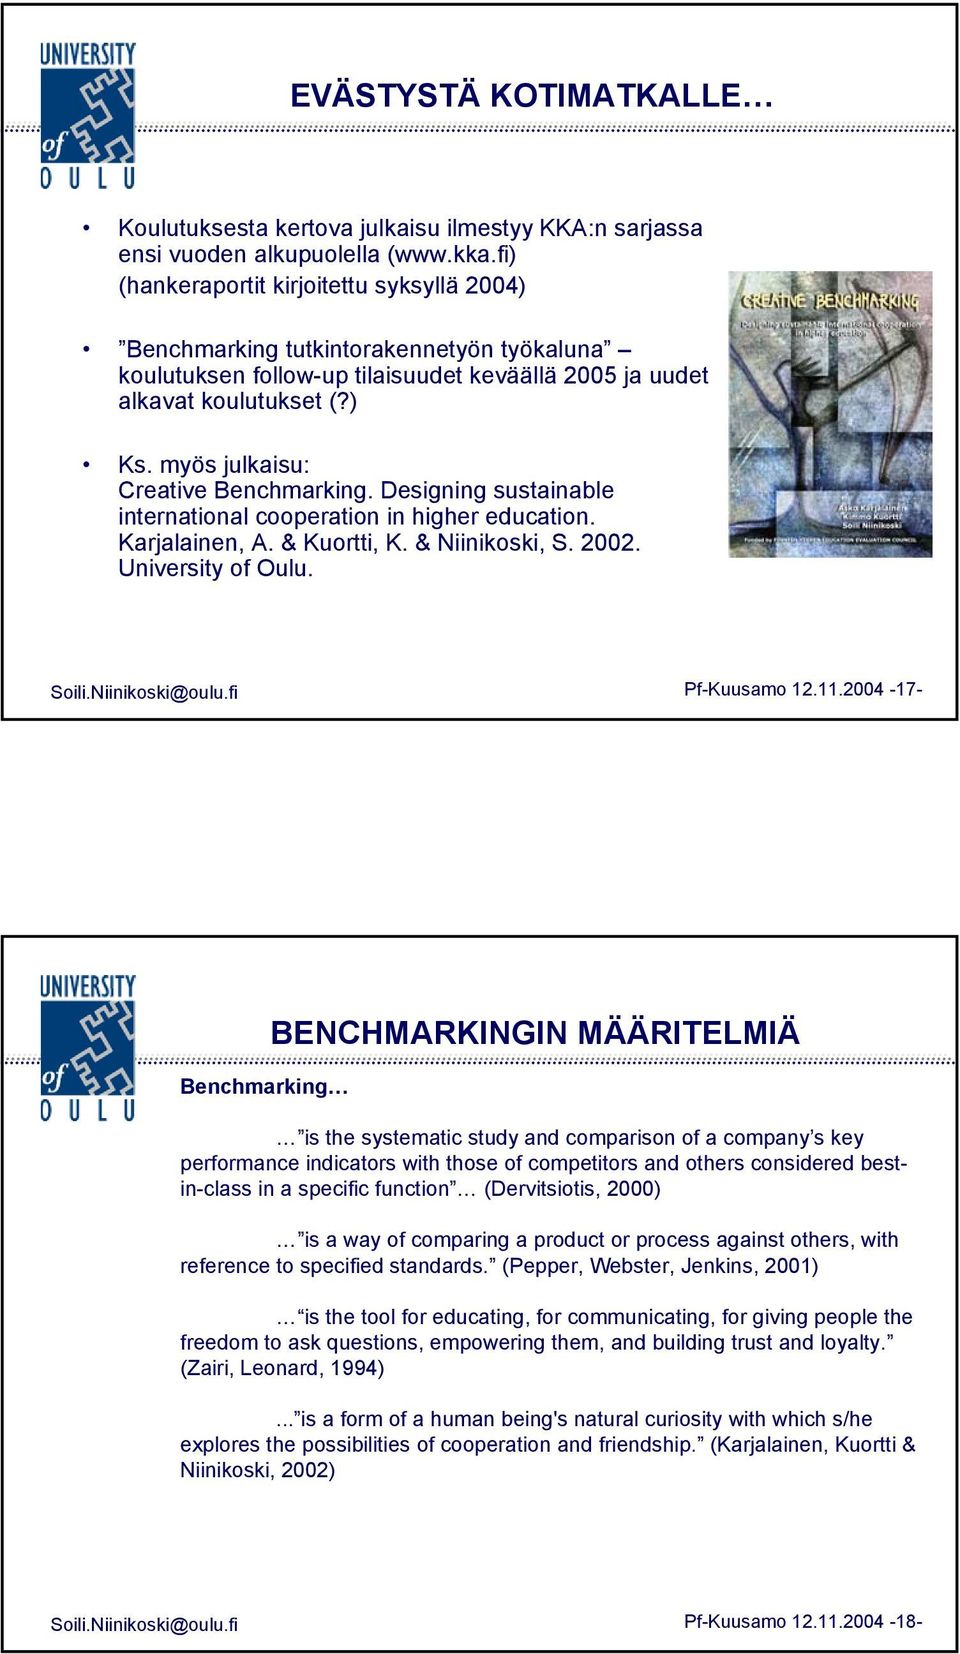 myös julkaisu: Creative Benchmarking. Designing sustainable international cooperation in higher education. Karjalainen, A. & Kuortti, K. & Niinikoski, S. 2002. University of Oulu. Soili.